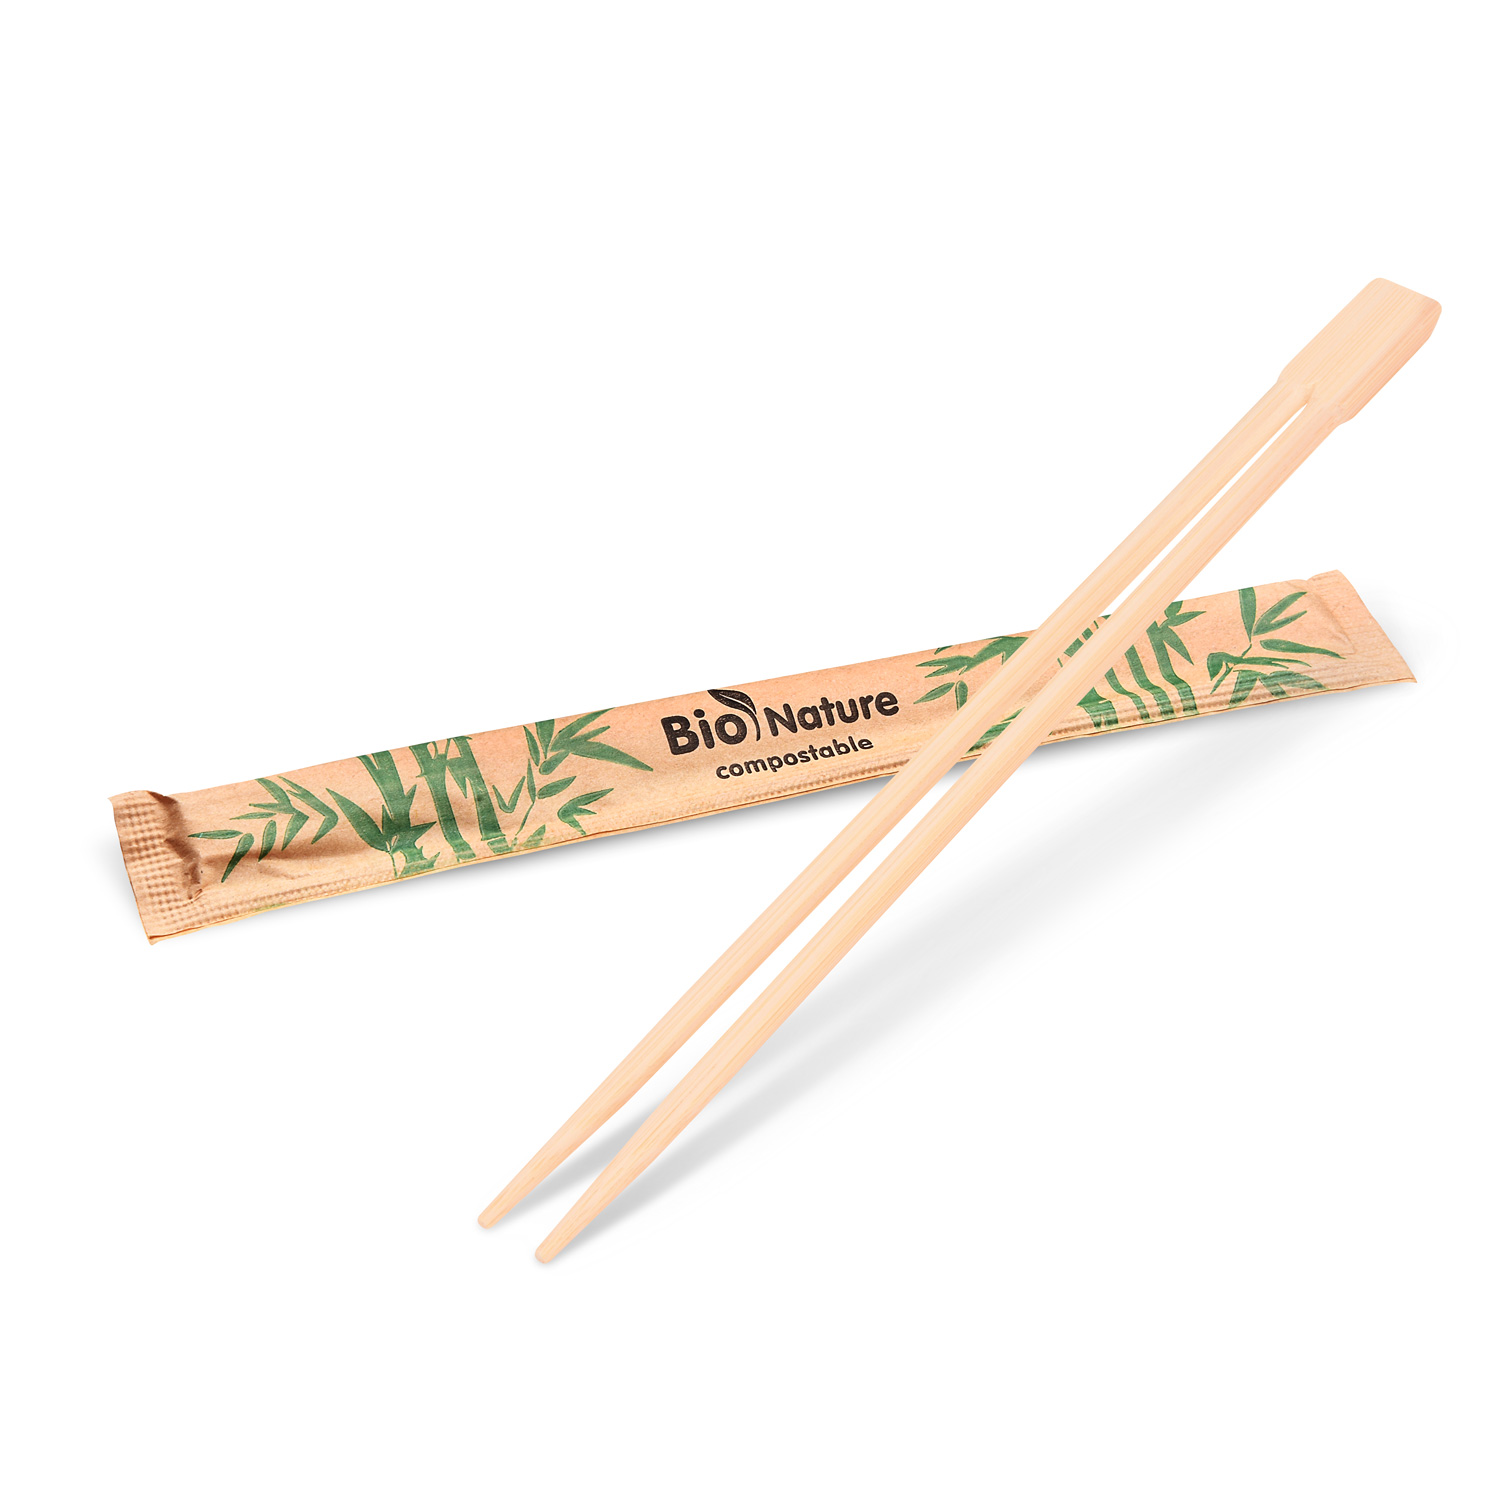 Eßstäbchen aus Bambus (FSC 100%) 6mm x 21cm paarweise verpackt - 50 Stück